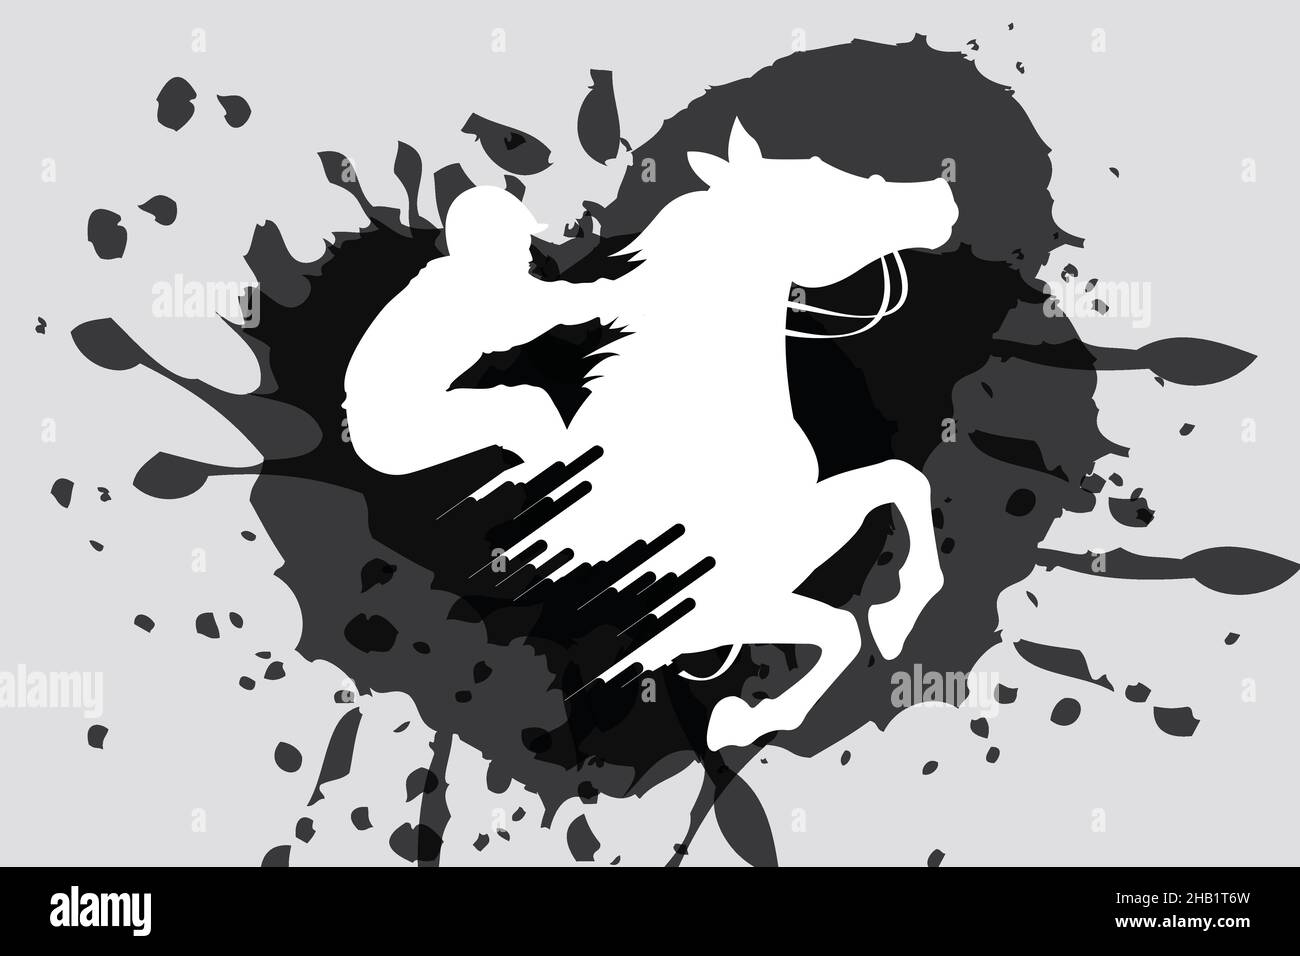 Illustrazione vettoriale del cavallo da corsa con jockey. Silhouette nera isolata su sfondo grigio chiaro. Logo del concorso equestre. Illustrazione Vettoriale